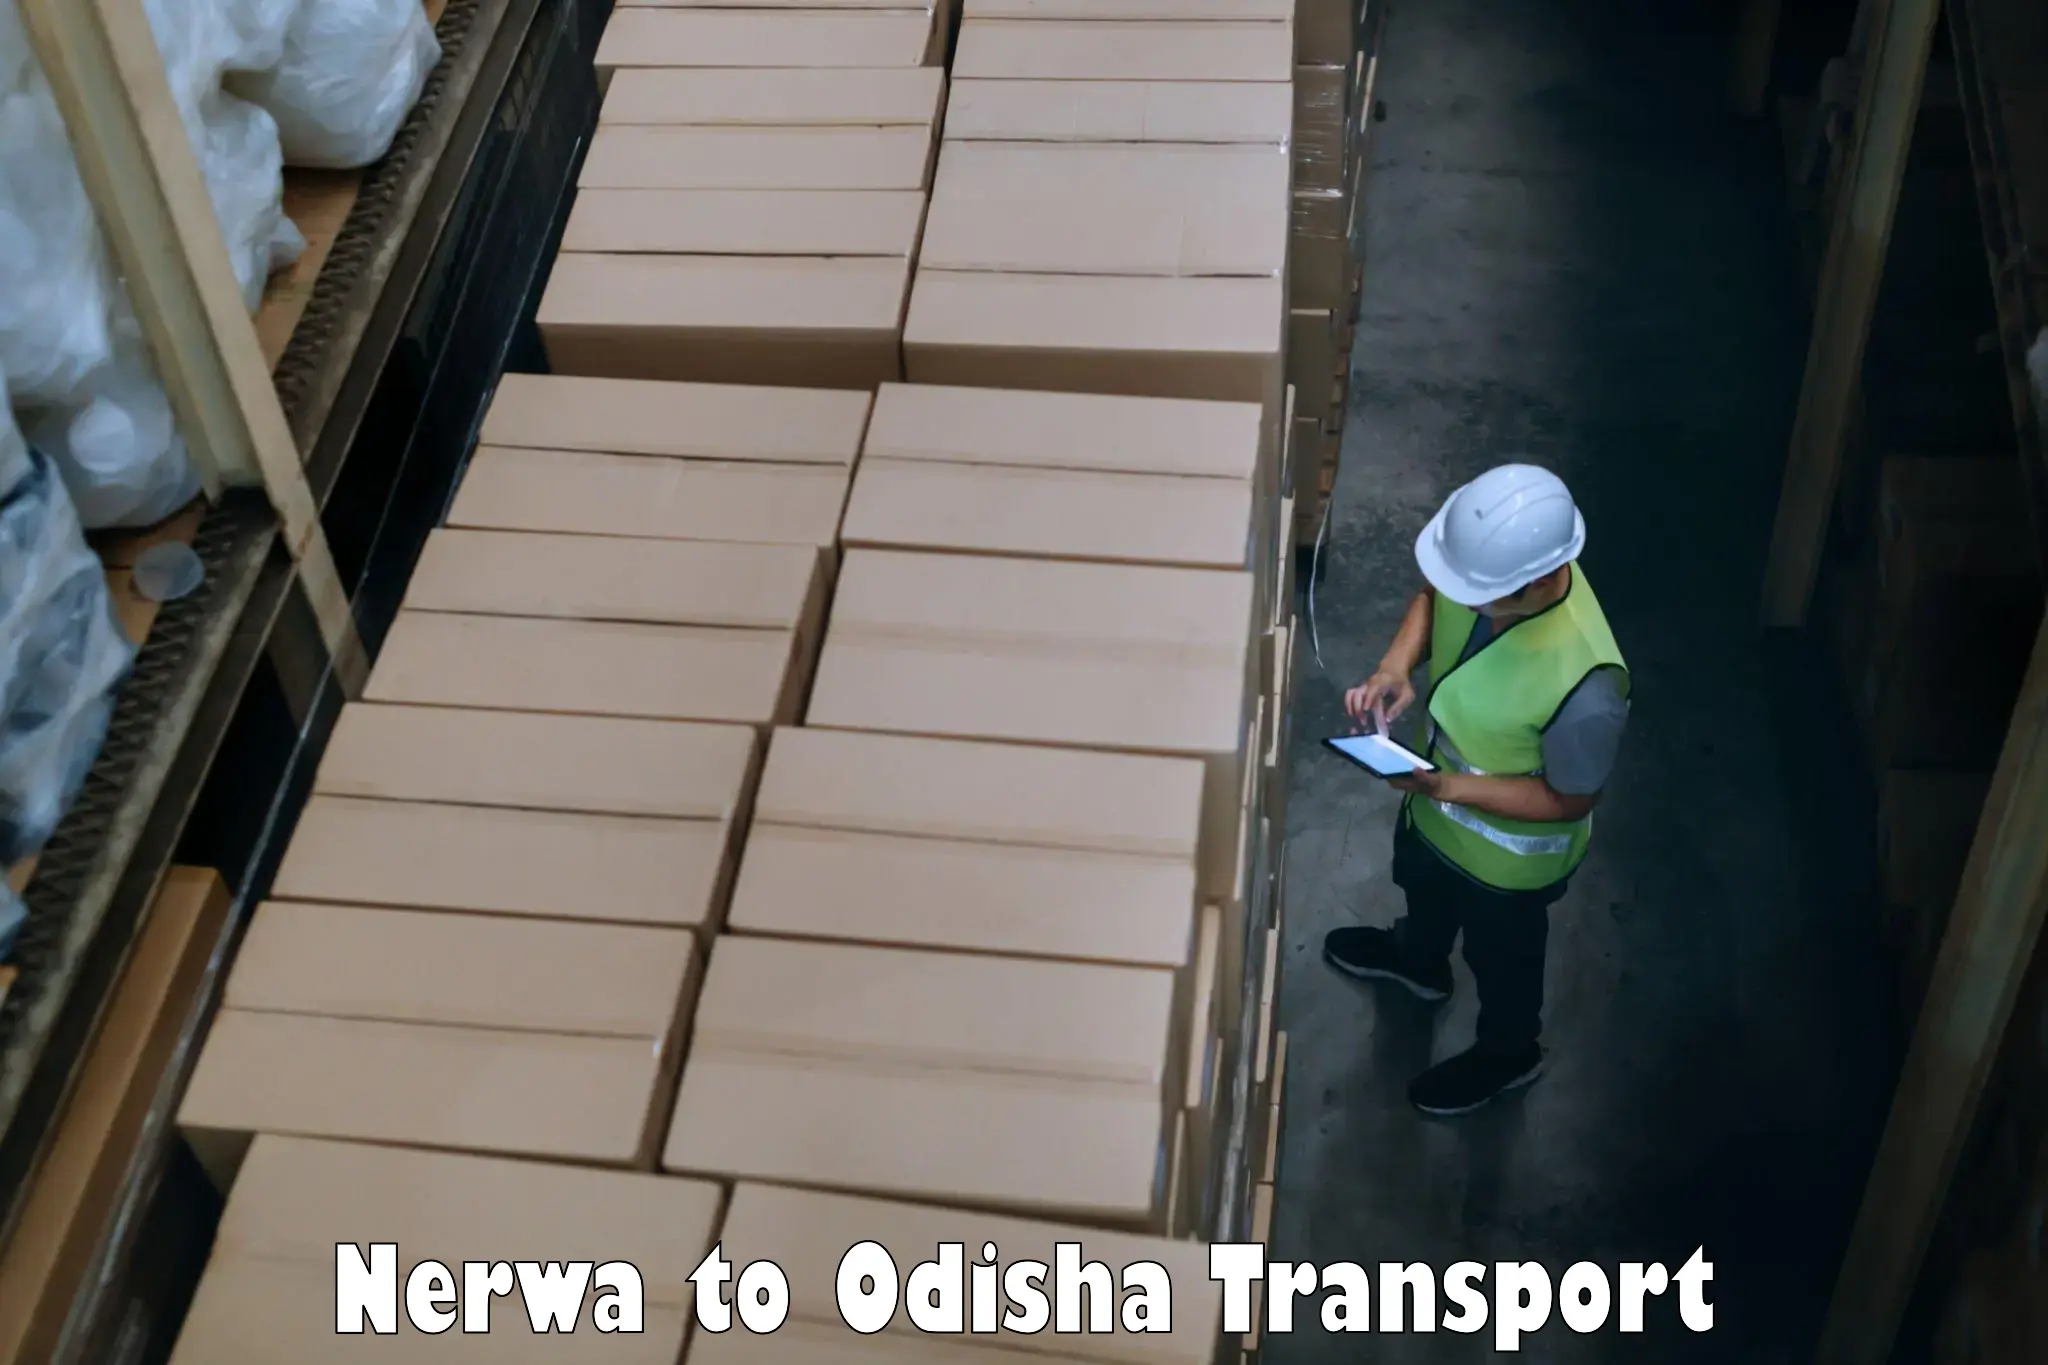 Transport in sharing Nerwa to Odisha